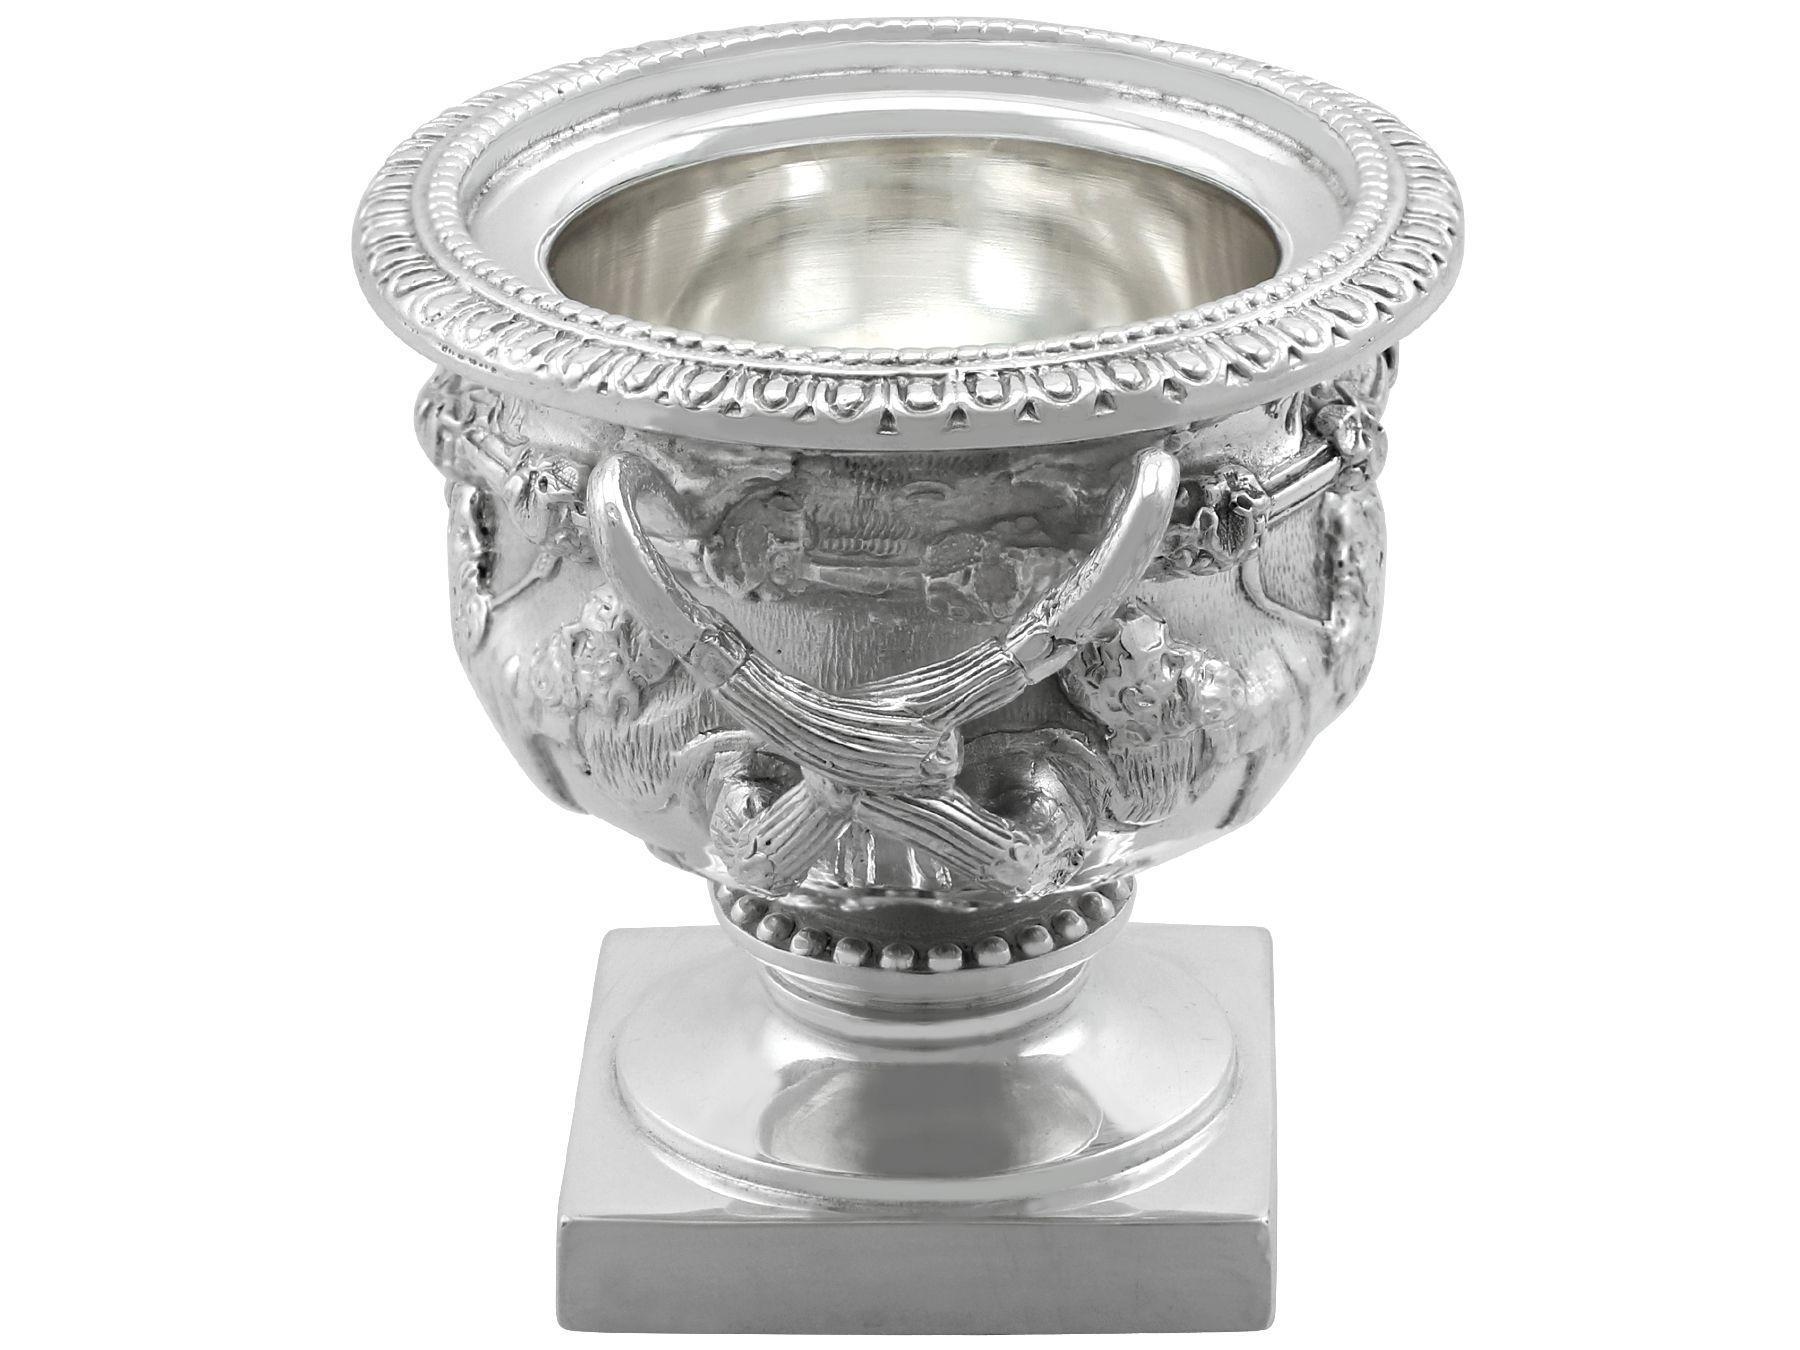 Eine außergewöhnliche, feine und beeindruckende Miniatur-Warwick-Vase aus englischem Sterlingsilber aus den 1980er Jahren; eine Ergänzung zu unserer Silber-Präsentationssammlung.

Diese außergewöhnliche Vintage-Miniatur-Silber Warwick Vase, in